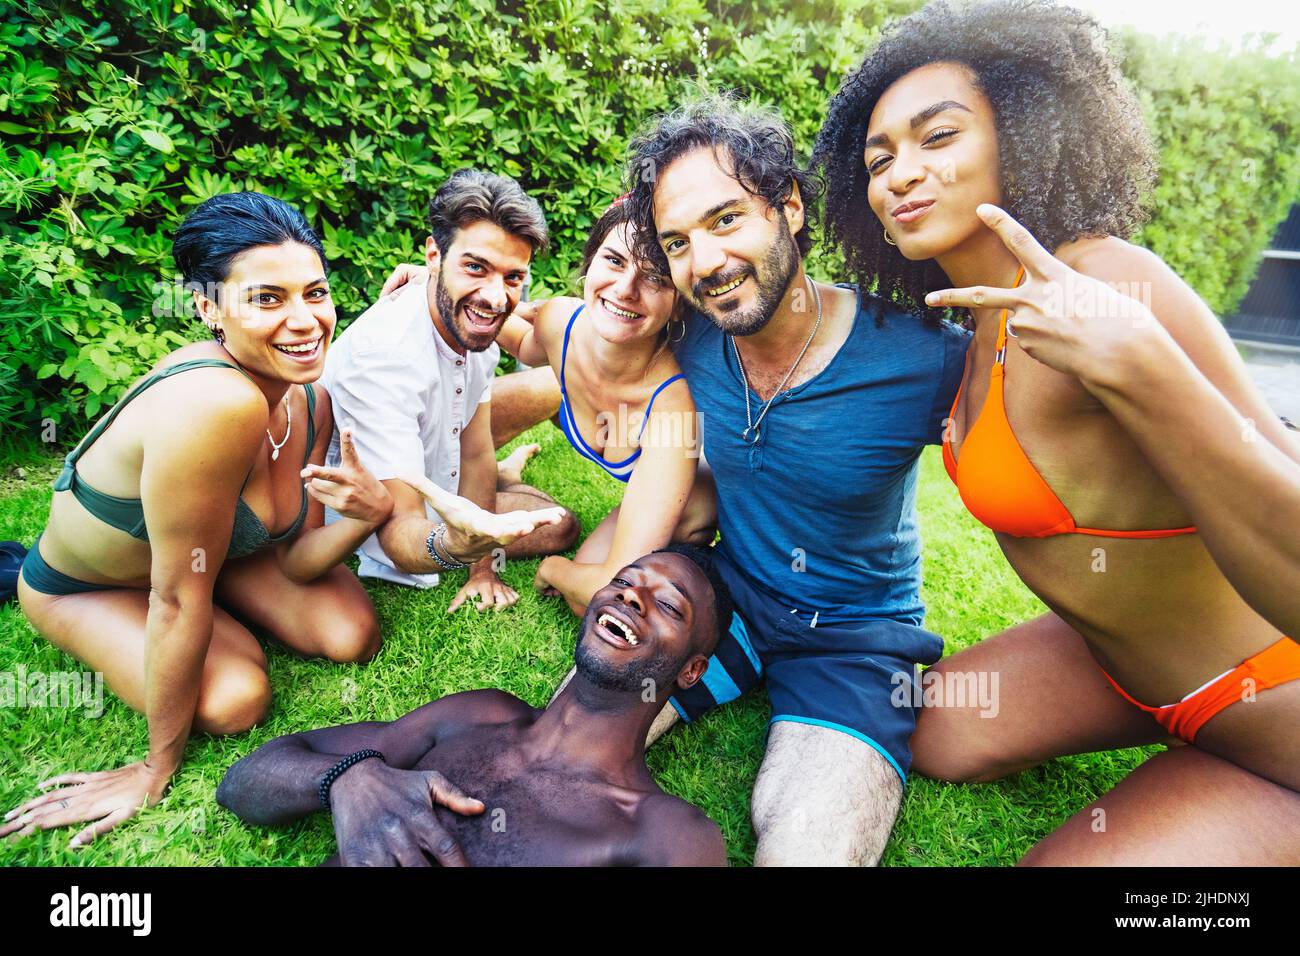 Multiethnische Gruppe von jungen Menschen im Badeanzug, die im Garten im Garten Selfies machen - Menschen, Freundschaft und Zweisamkeit Konzept Stockfoto